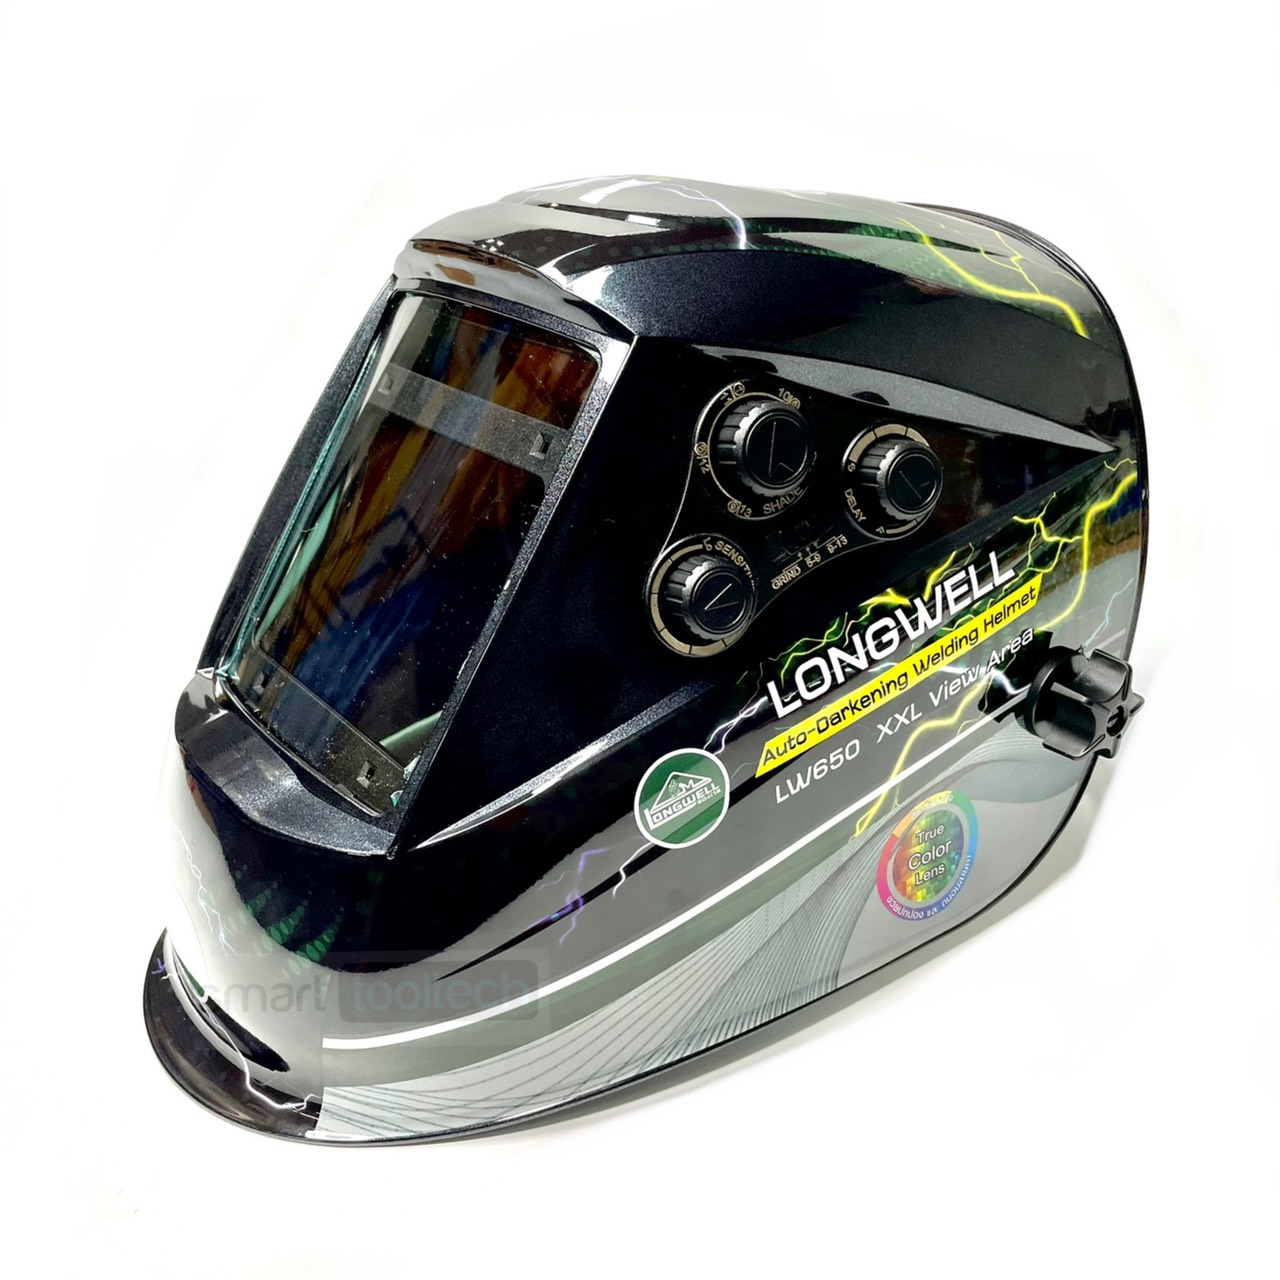 ?โปร6.6 รุ่นใหม่ล่าสุด?หน้ากากเชื่อมออโต้ Longwell LW650 / LW-01 (Auto darkening helmet)